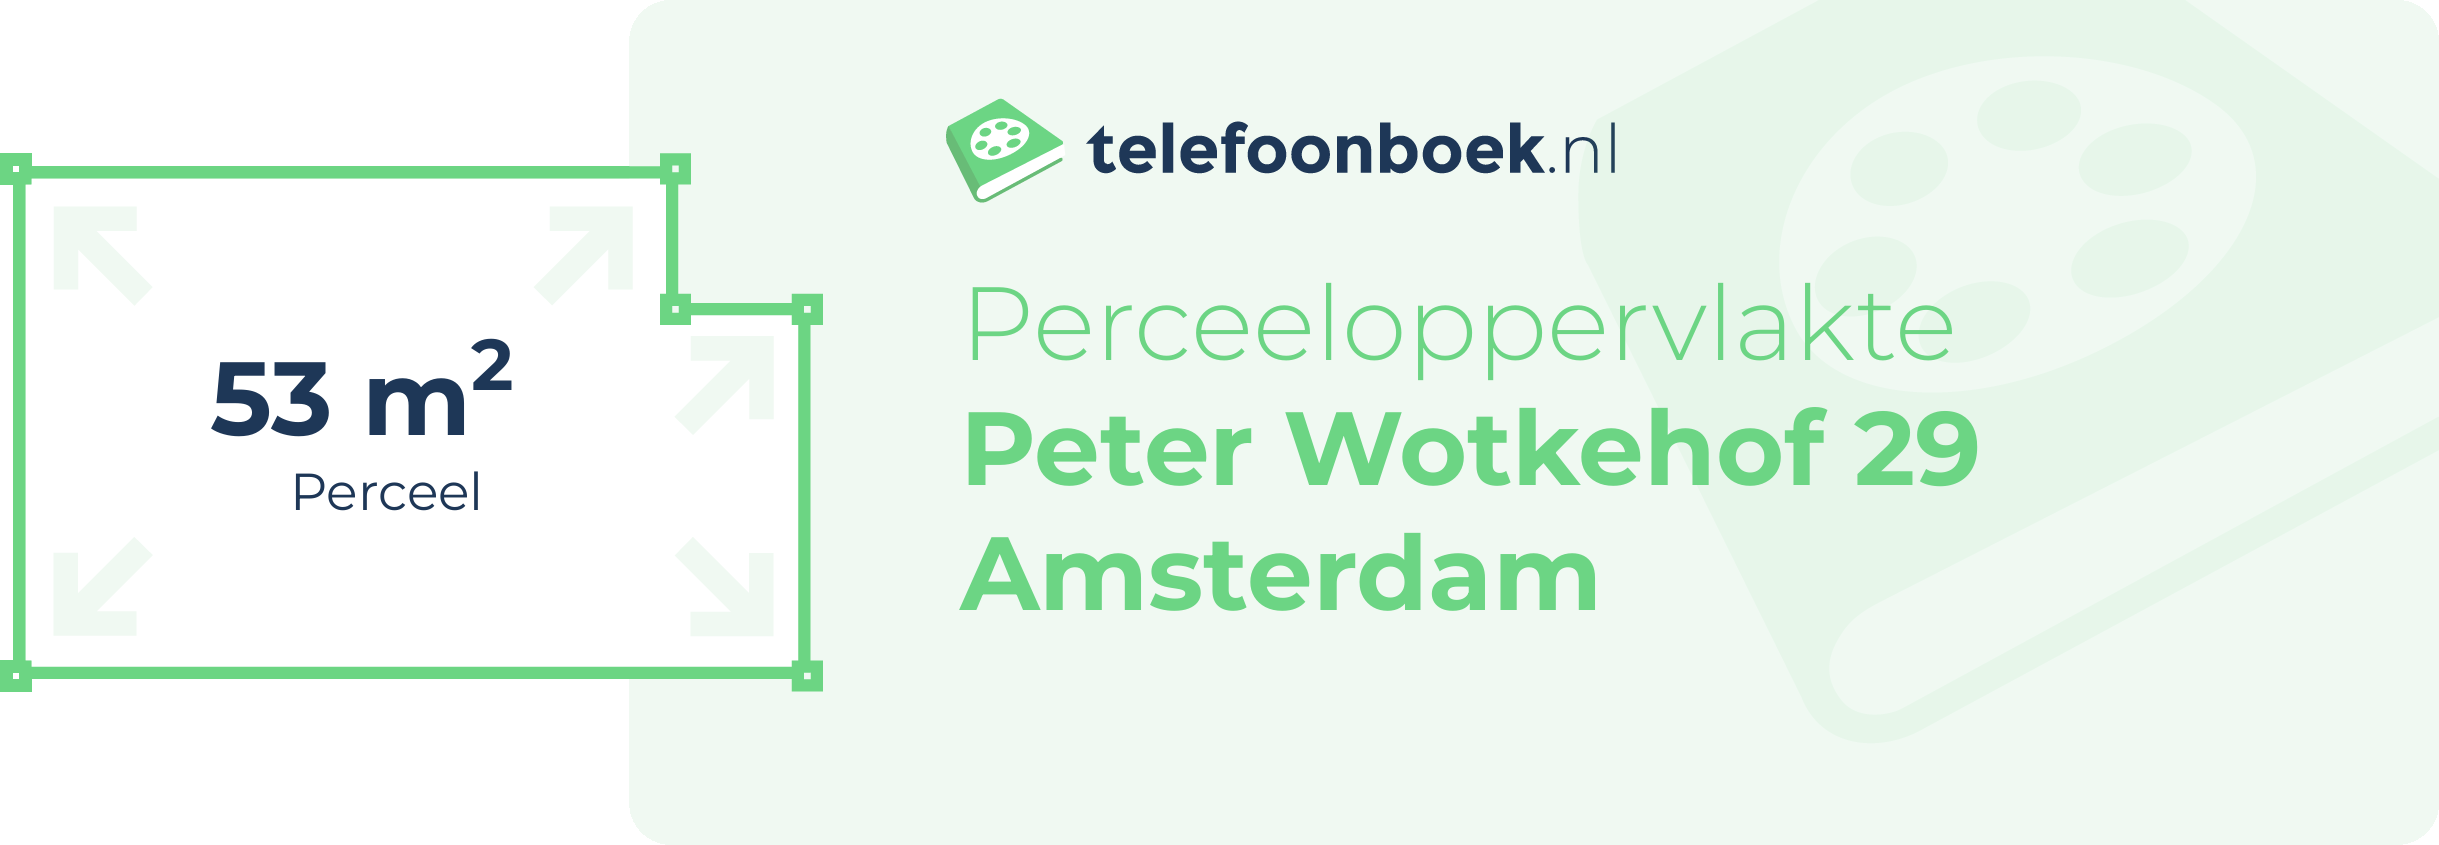 Perceeloppervlakte Peter Wotkehof 29 Amsterdam